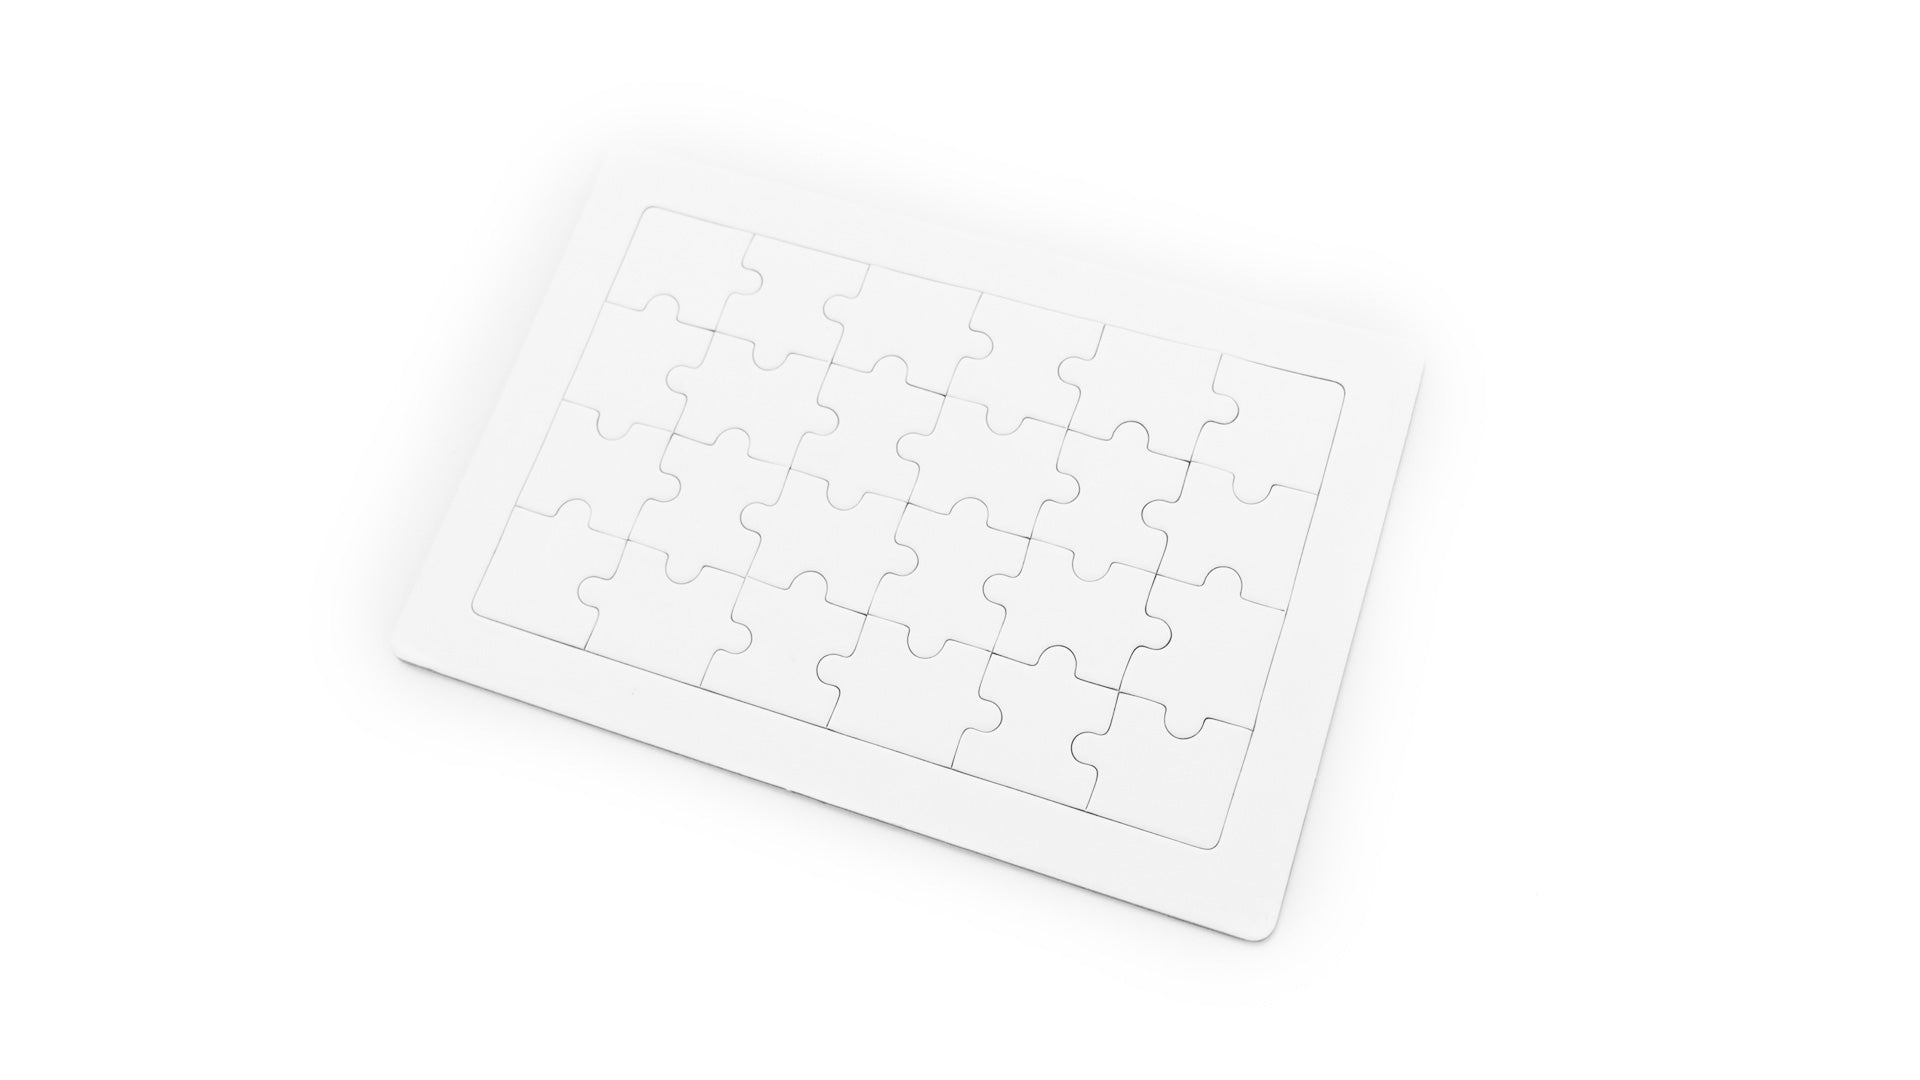 Jeu éducatif en carton : puzzle blanc de 24 pièces avec boîte de crayons colorés.